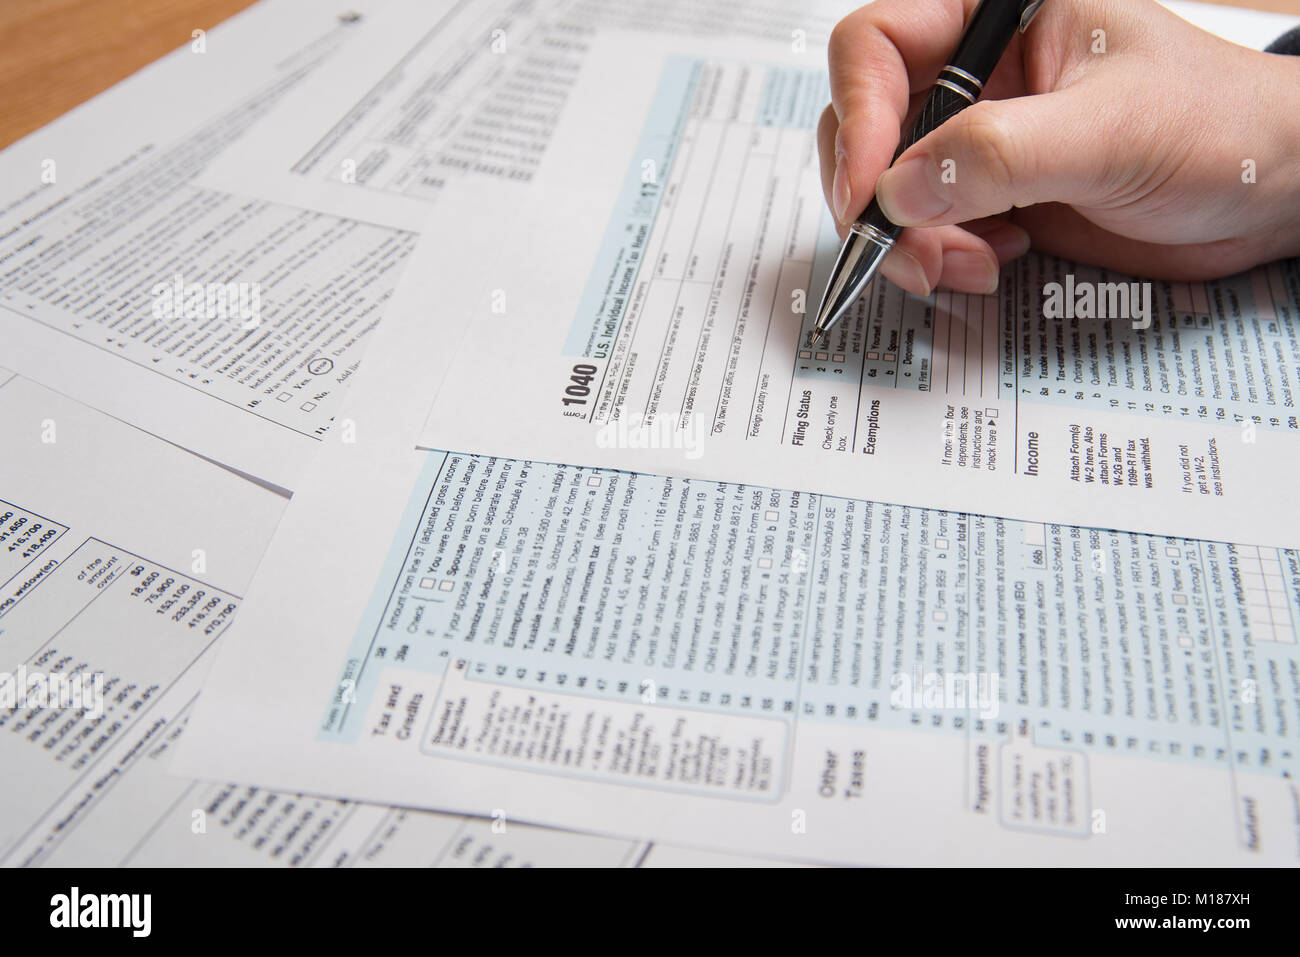 USA tax form 1040. Man filling US tax form. Stock Photo